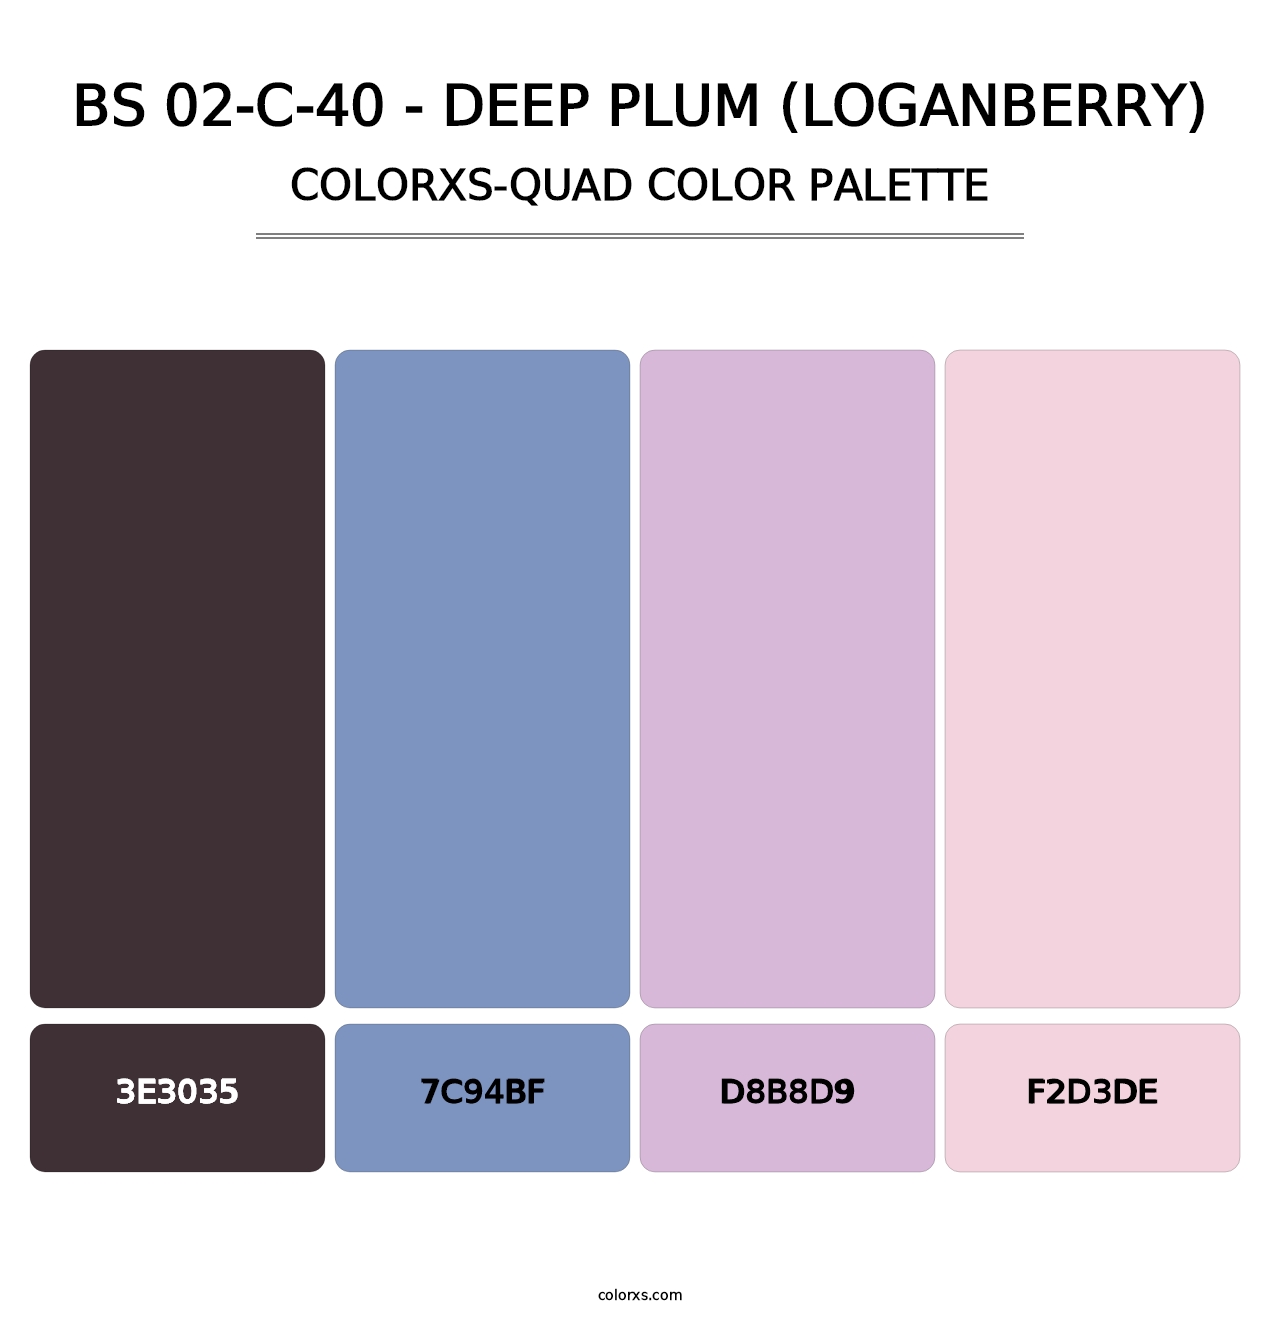 BS 02-C-40 - Deep Plum (Loganberry) - Colorxs Quad Palette